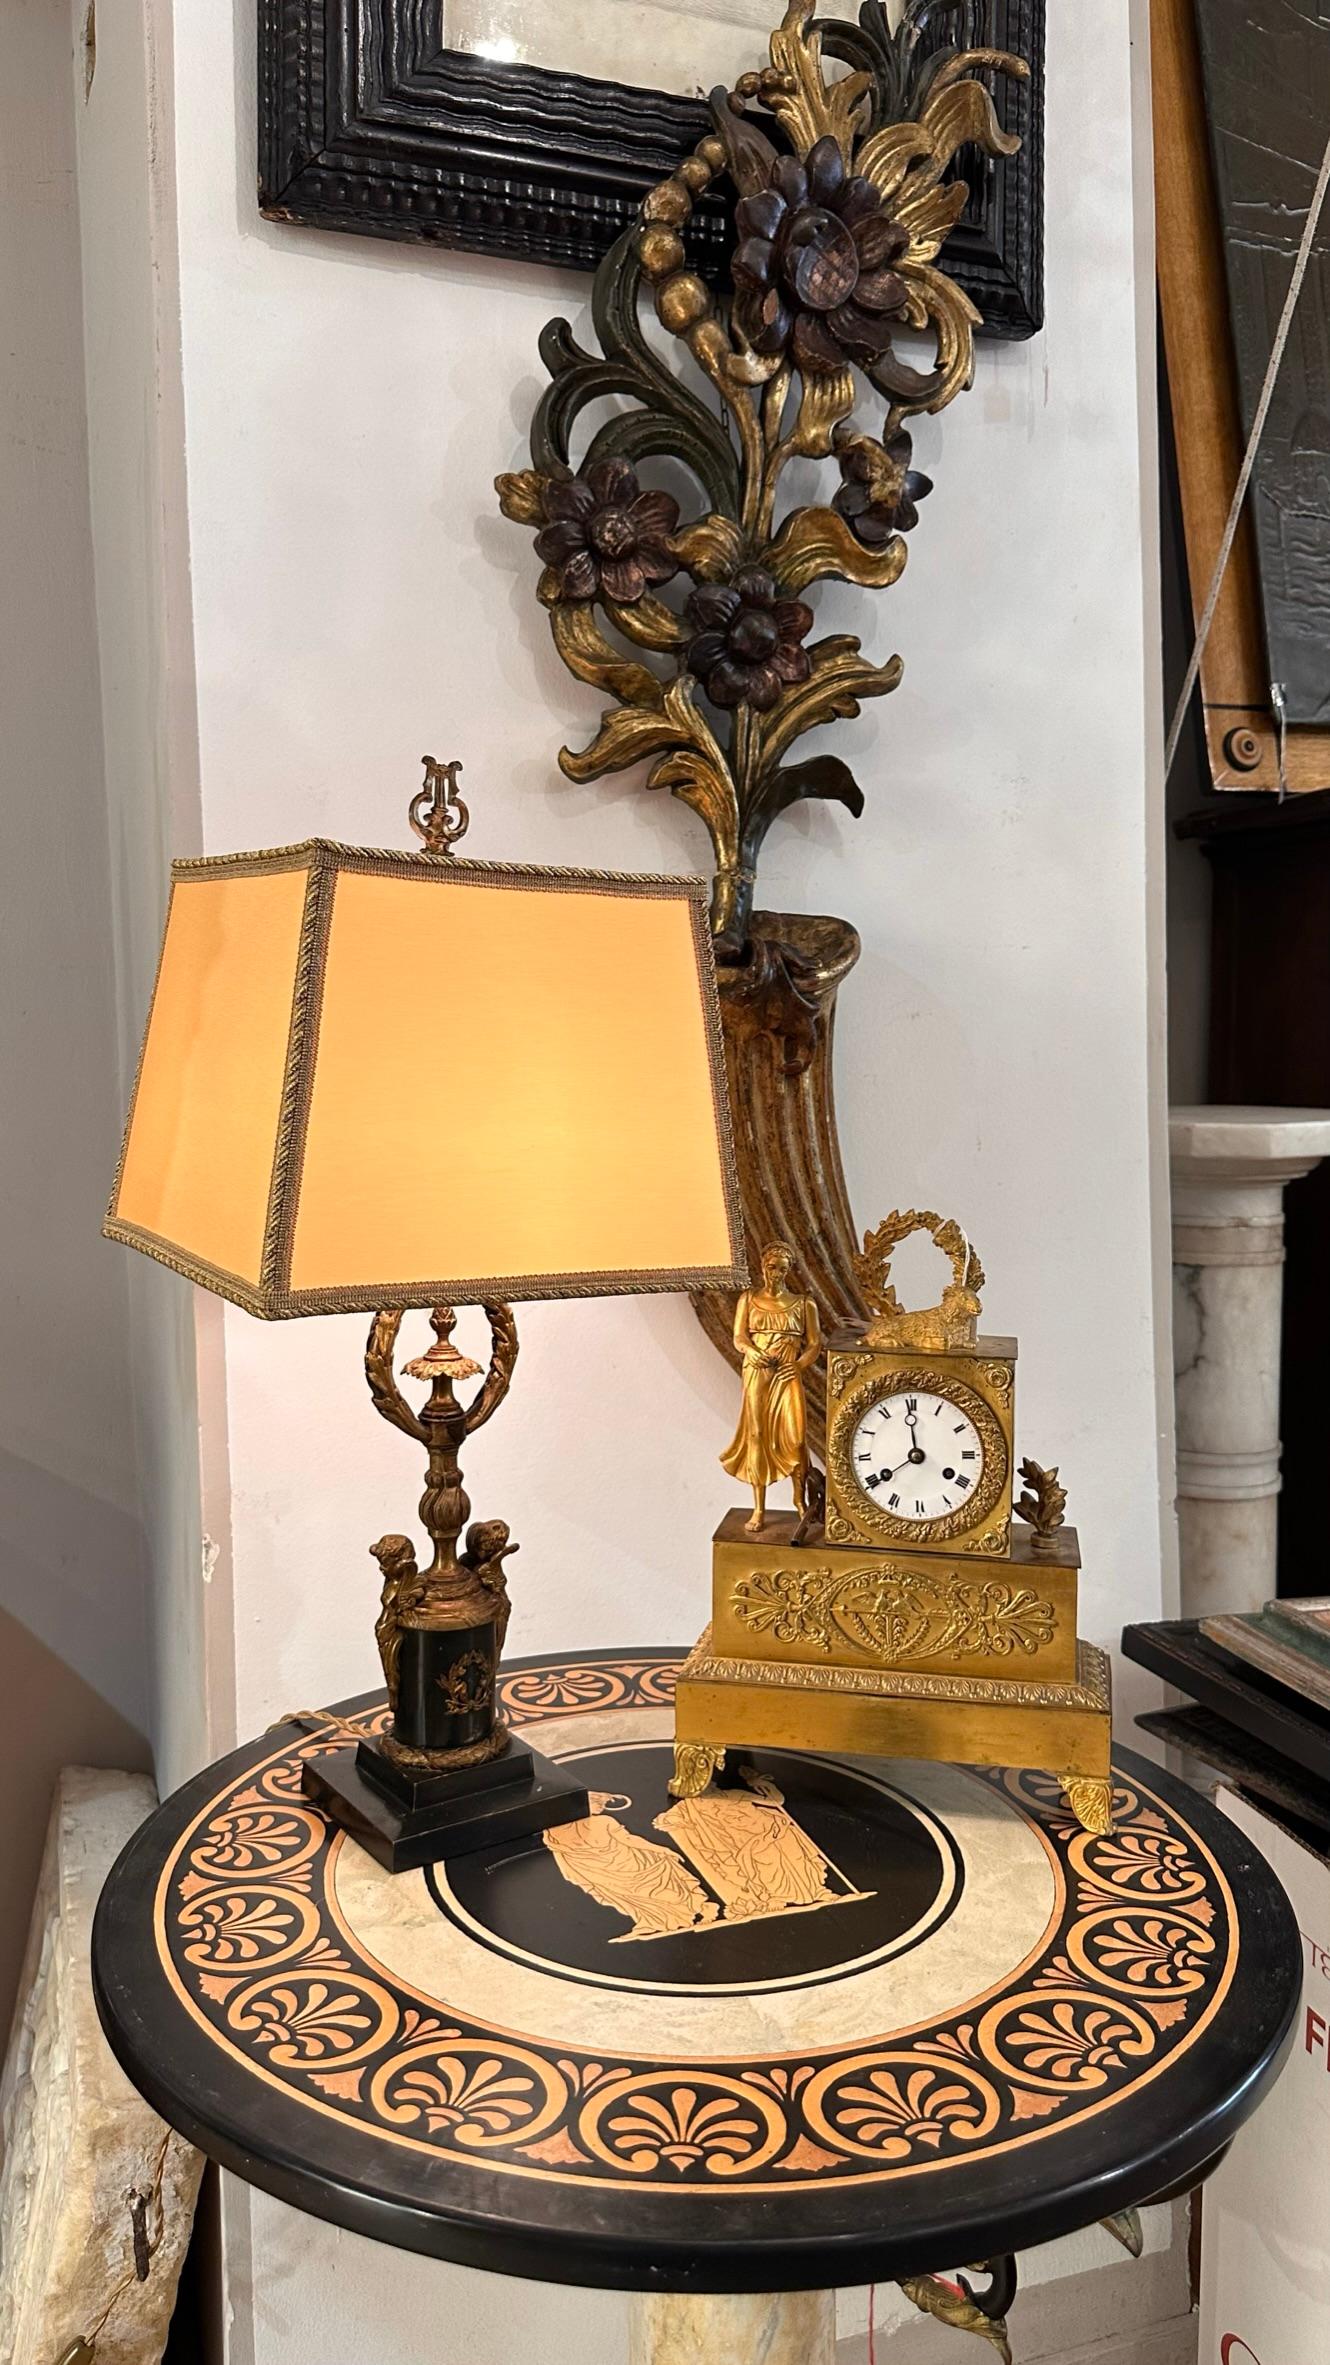 MID 19th CENTURY EMPIRE BOUILLOTTE LAMP For Sale 2